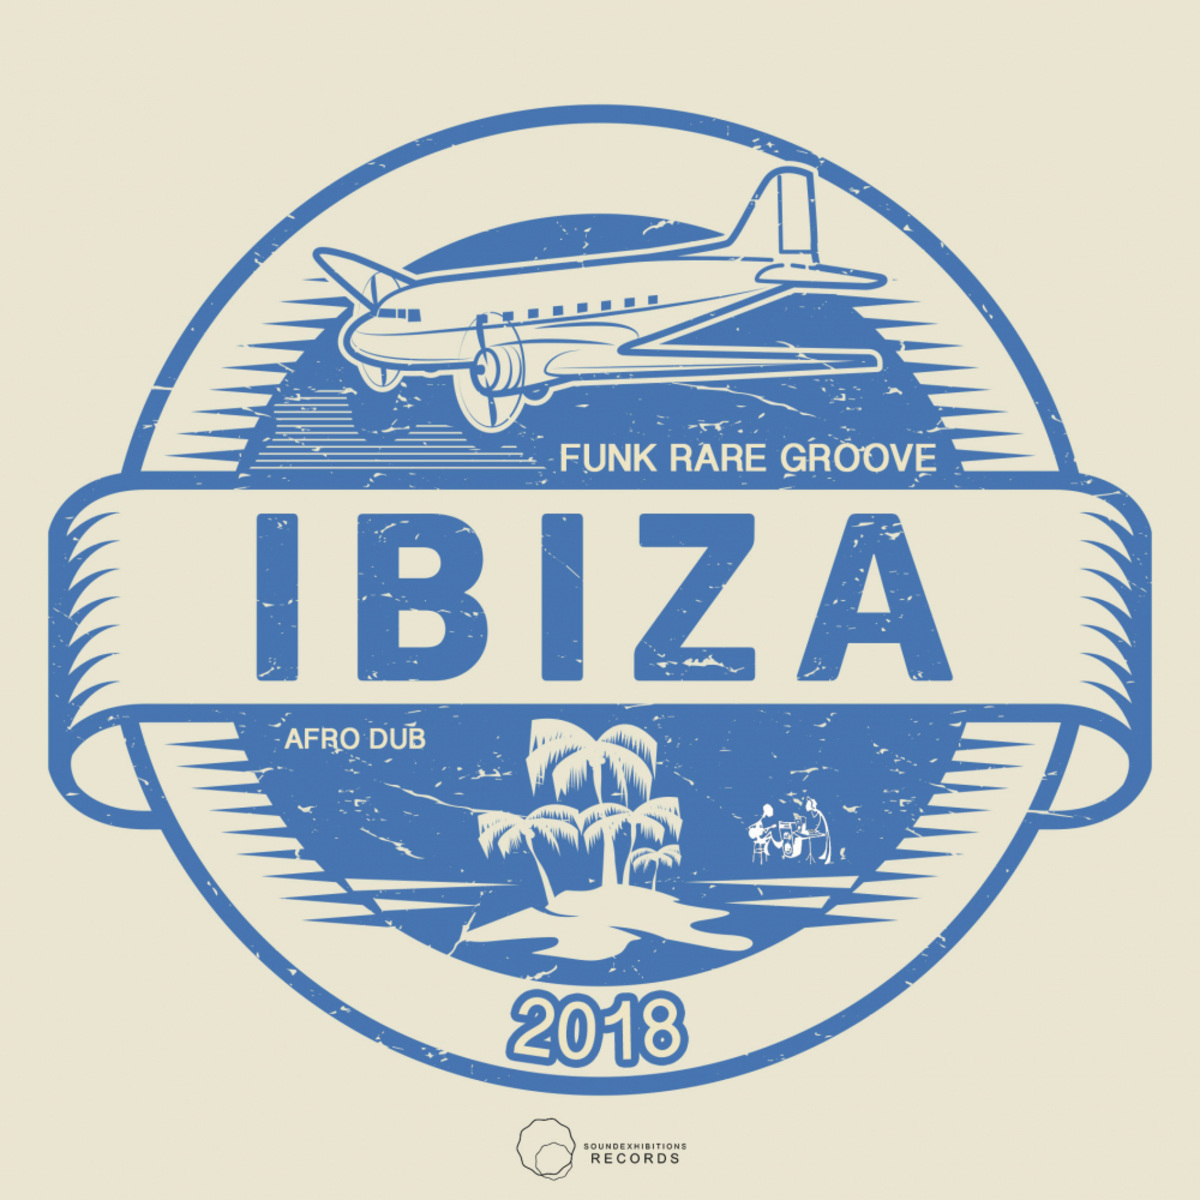 Afro Dub - Ibiza 2018 Funk Rare Groove / Sound-Exhibitions-Records